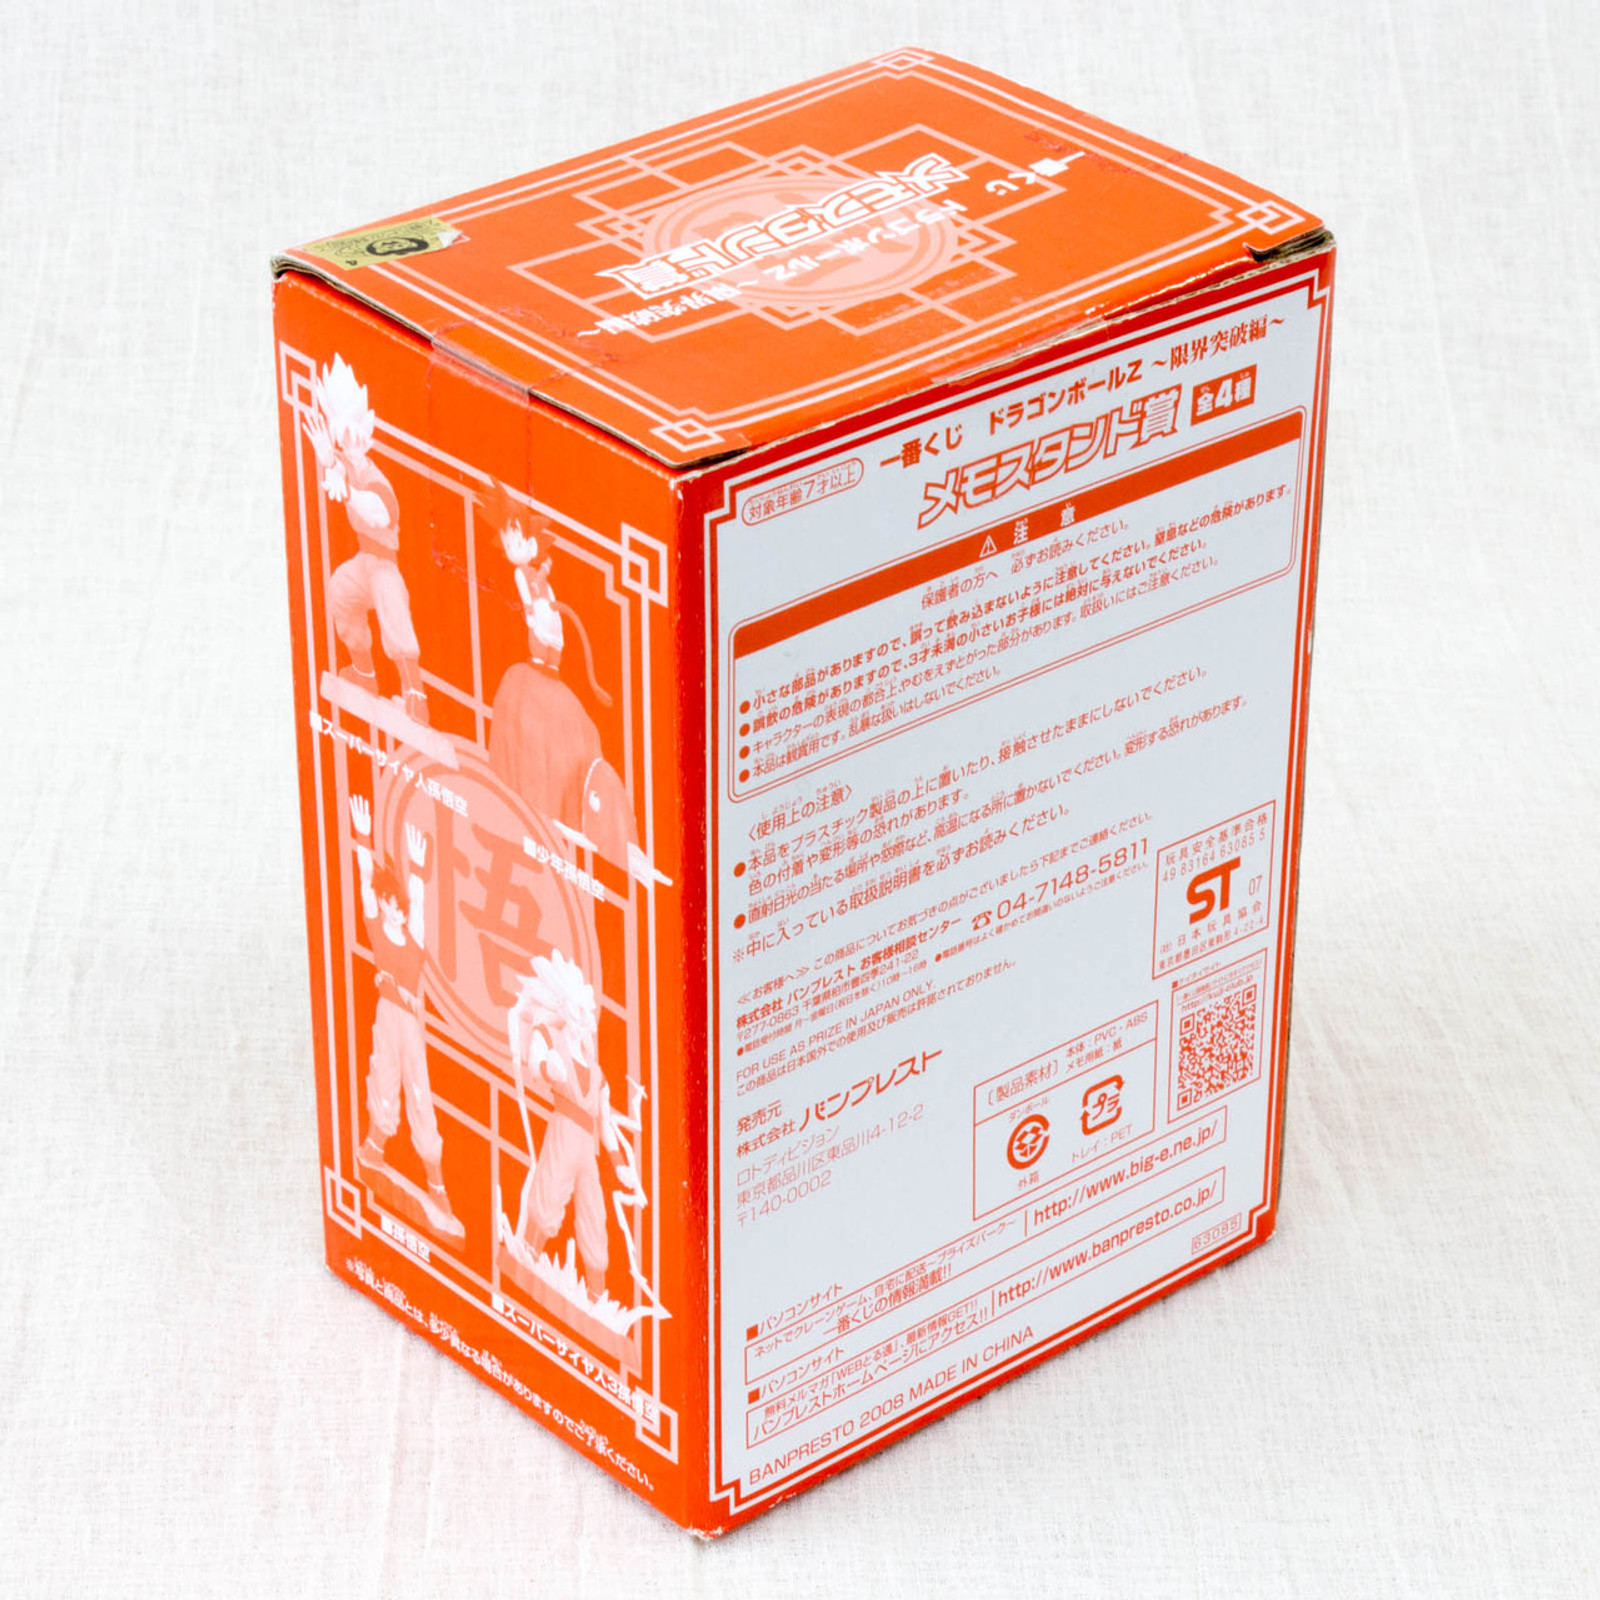 Dragon Ball Z Son Gokou Spirit Bomb Figure Memo Paper Stand banpresto JAPAN